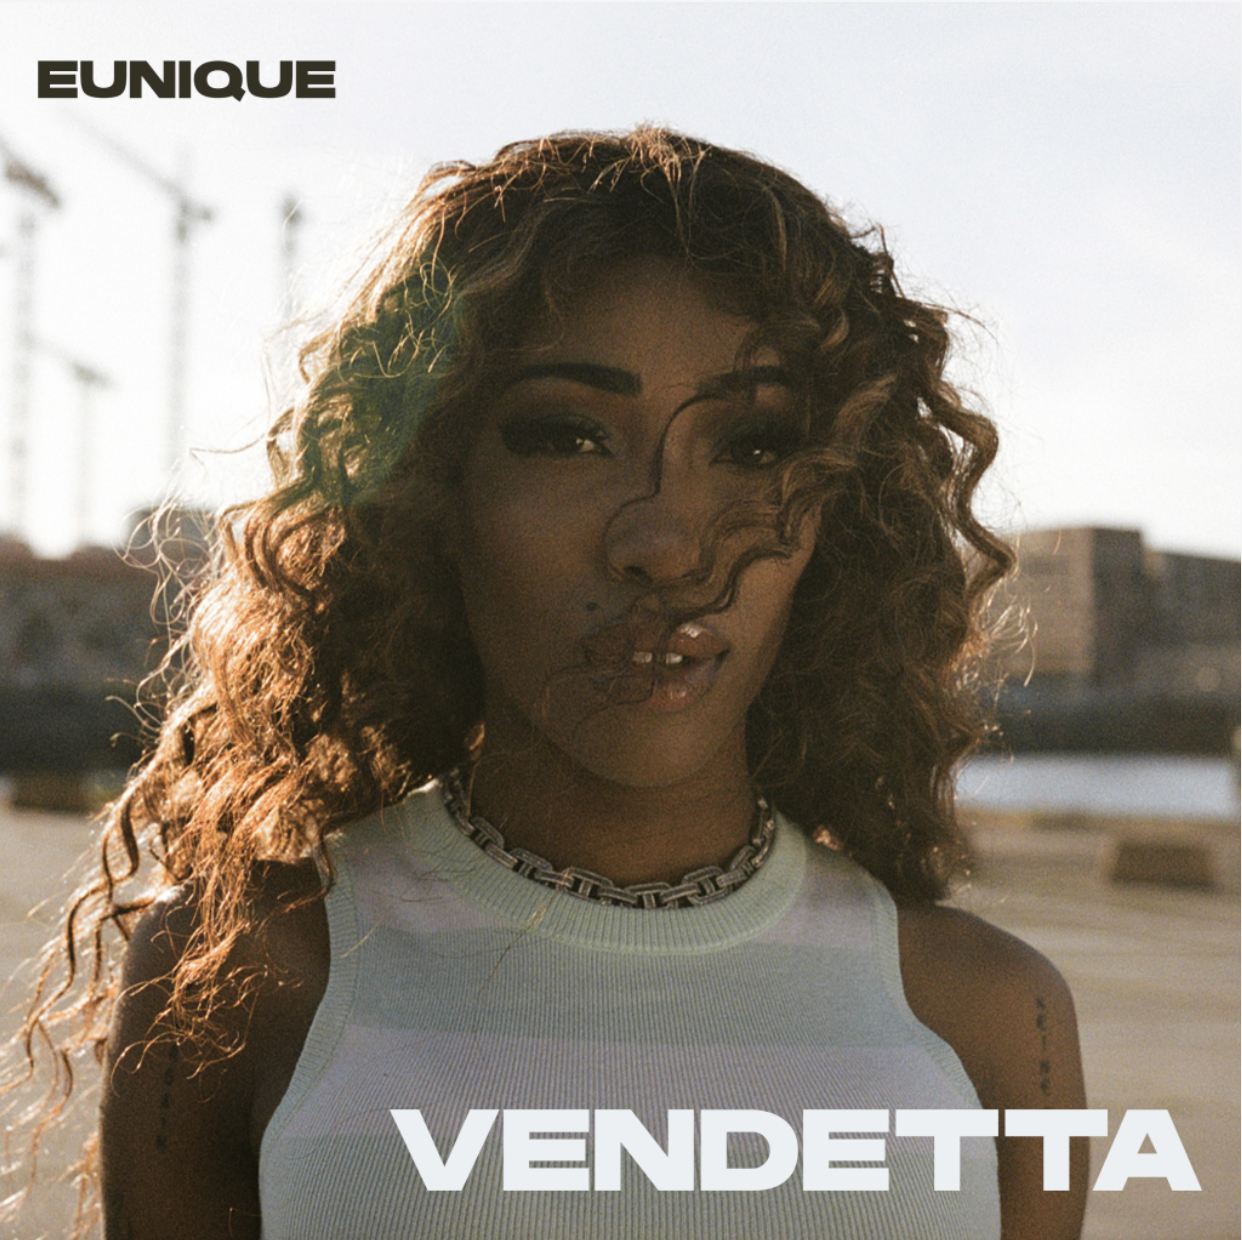 Eunique
‘Vendetta’
